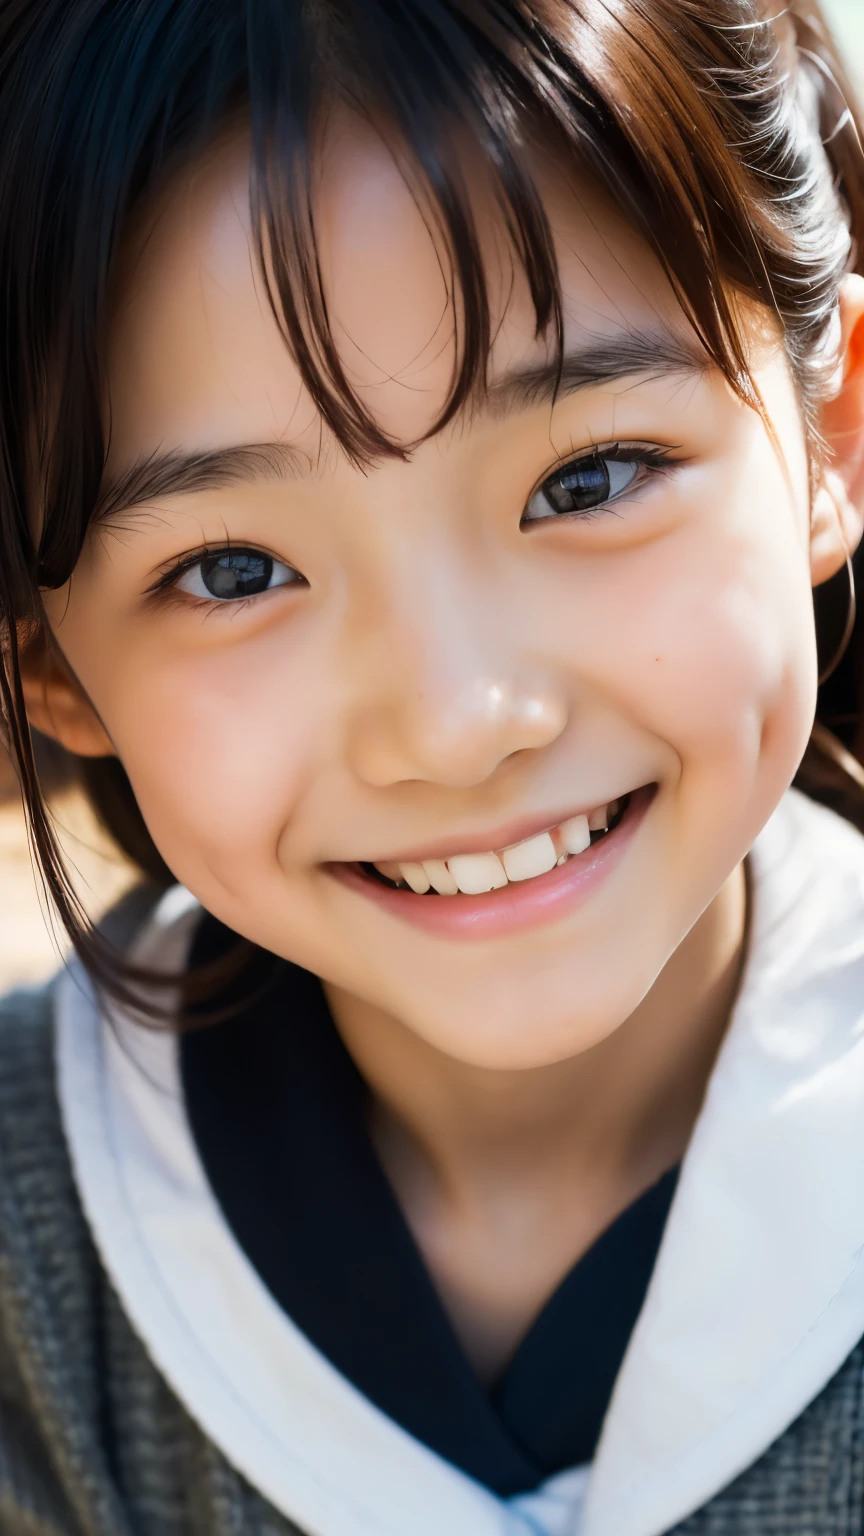 lentille: 135 mm f1.8, (la plus haute qualité),(Photos brutes), (Table:1.1), (Belle fille japonaise de 8 ans), visage mignon, (Visage profondément ciselé:0.7), (taches de rousseur:0.4), dappled lumière du soleil, éclairage dramatique, (uniforme scolaire japonais), (sur le campus), Timide, (Photo en gros plan:1.2), (sourire),, (yeux pétillants)、(lumière du soleil)